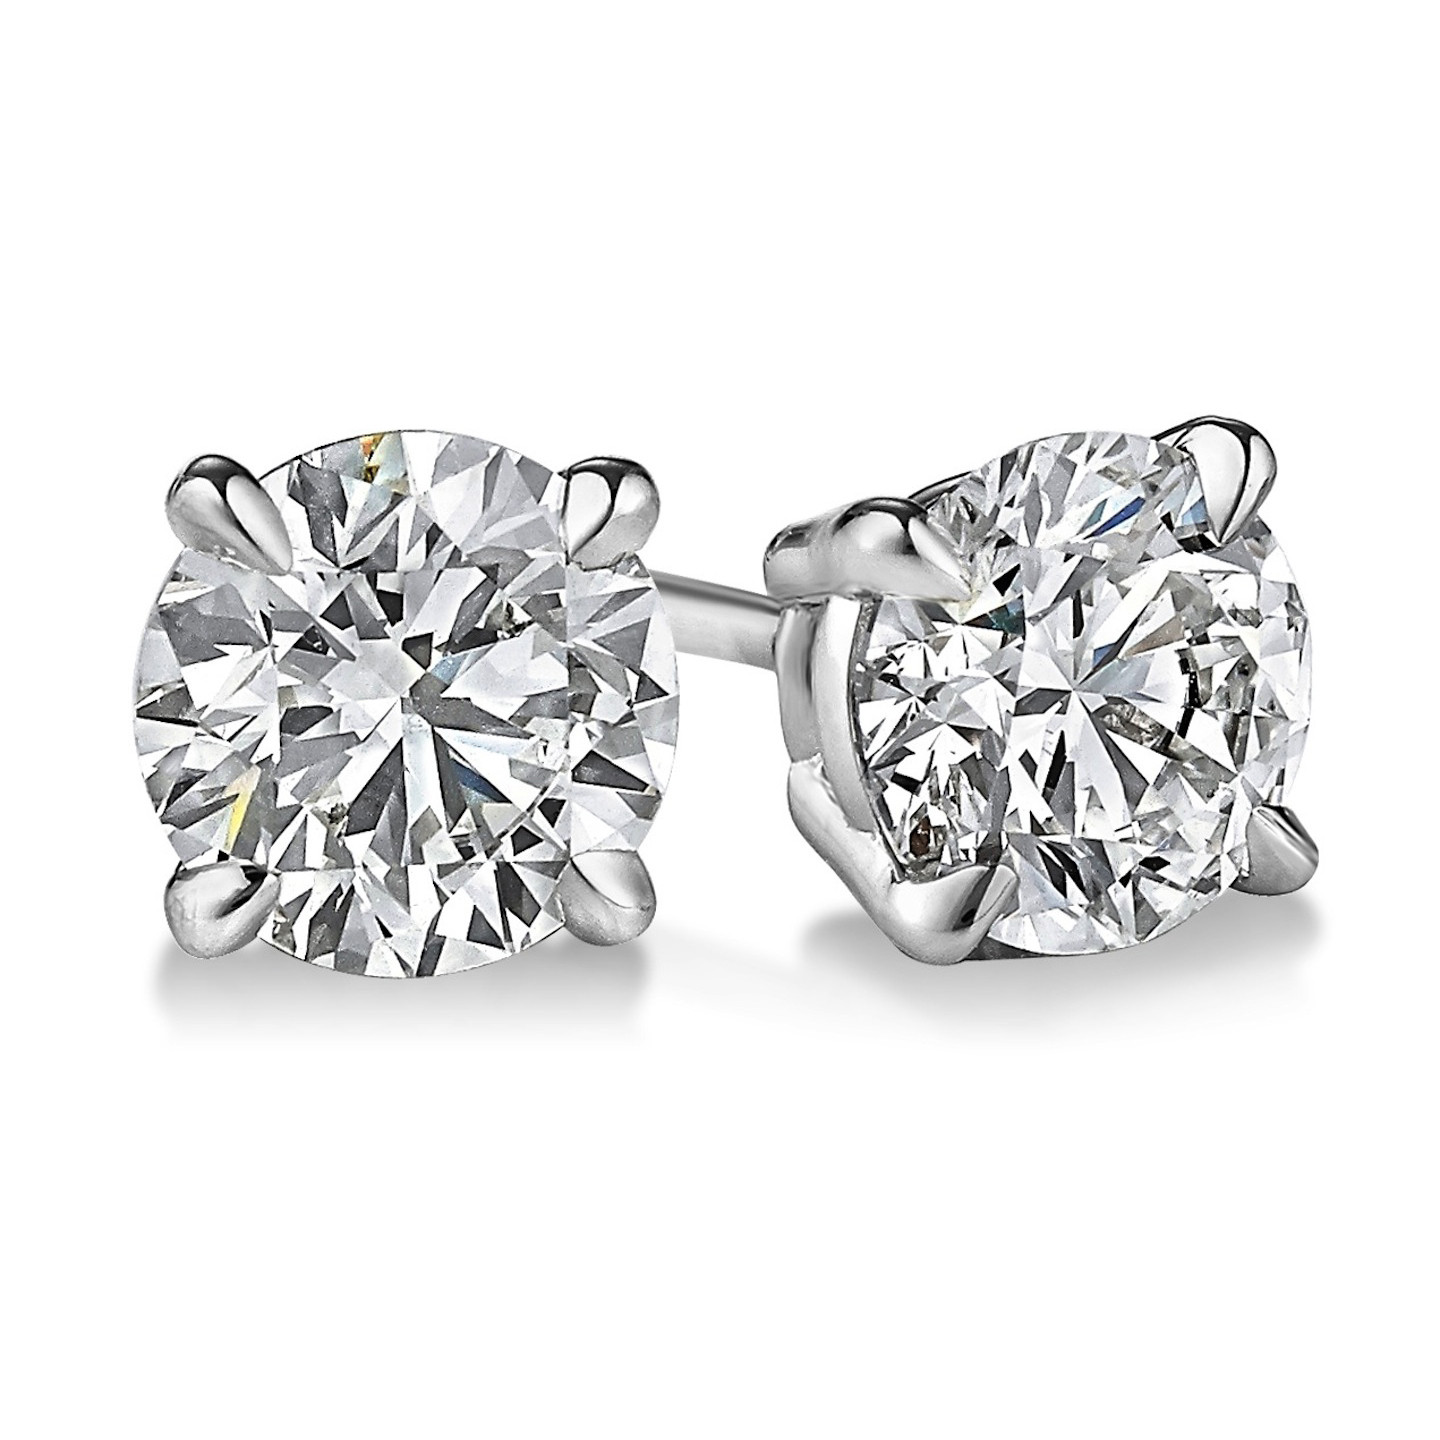 Kohl's Diamond Stud Earrings
 EGL USA Certified Round 1 08 CTW Diamond Stud Earrings in